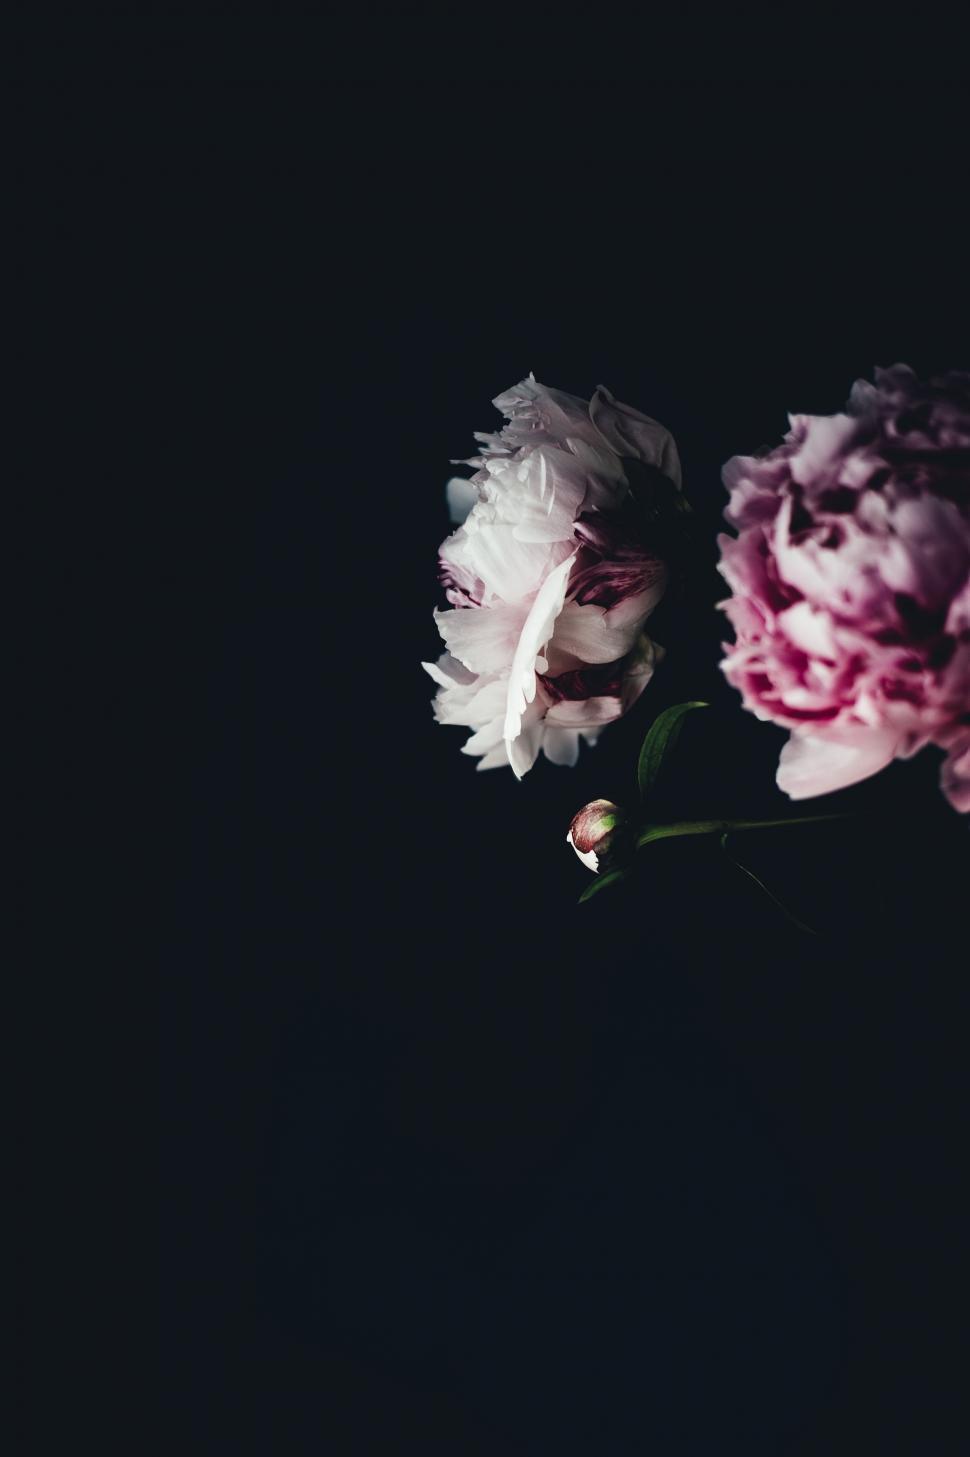 Free Image of Two Dark Flowers in Bloom 